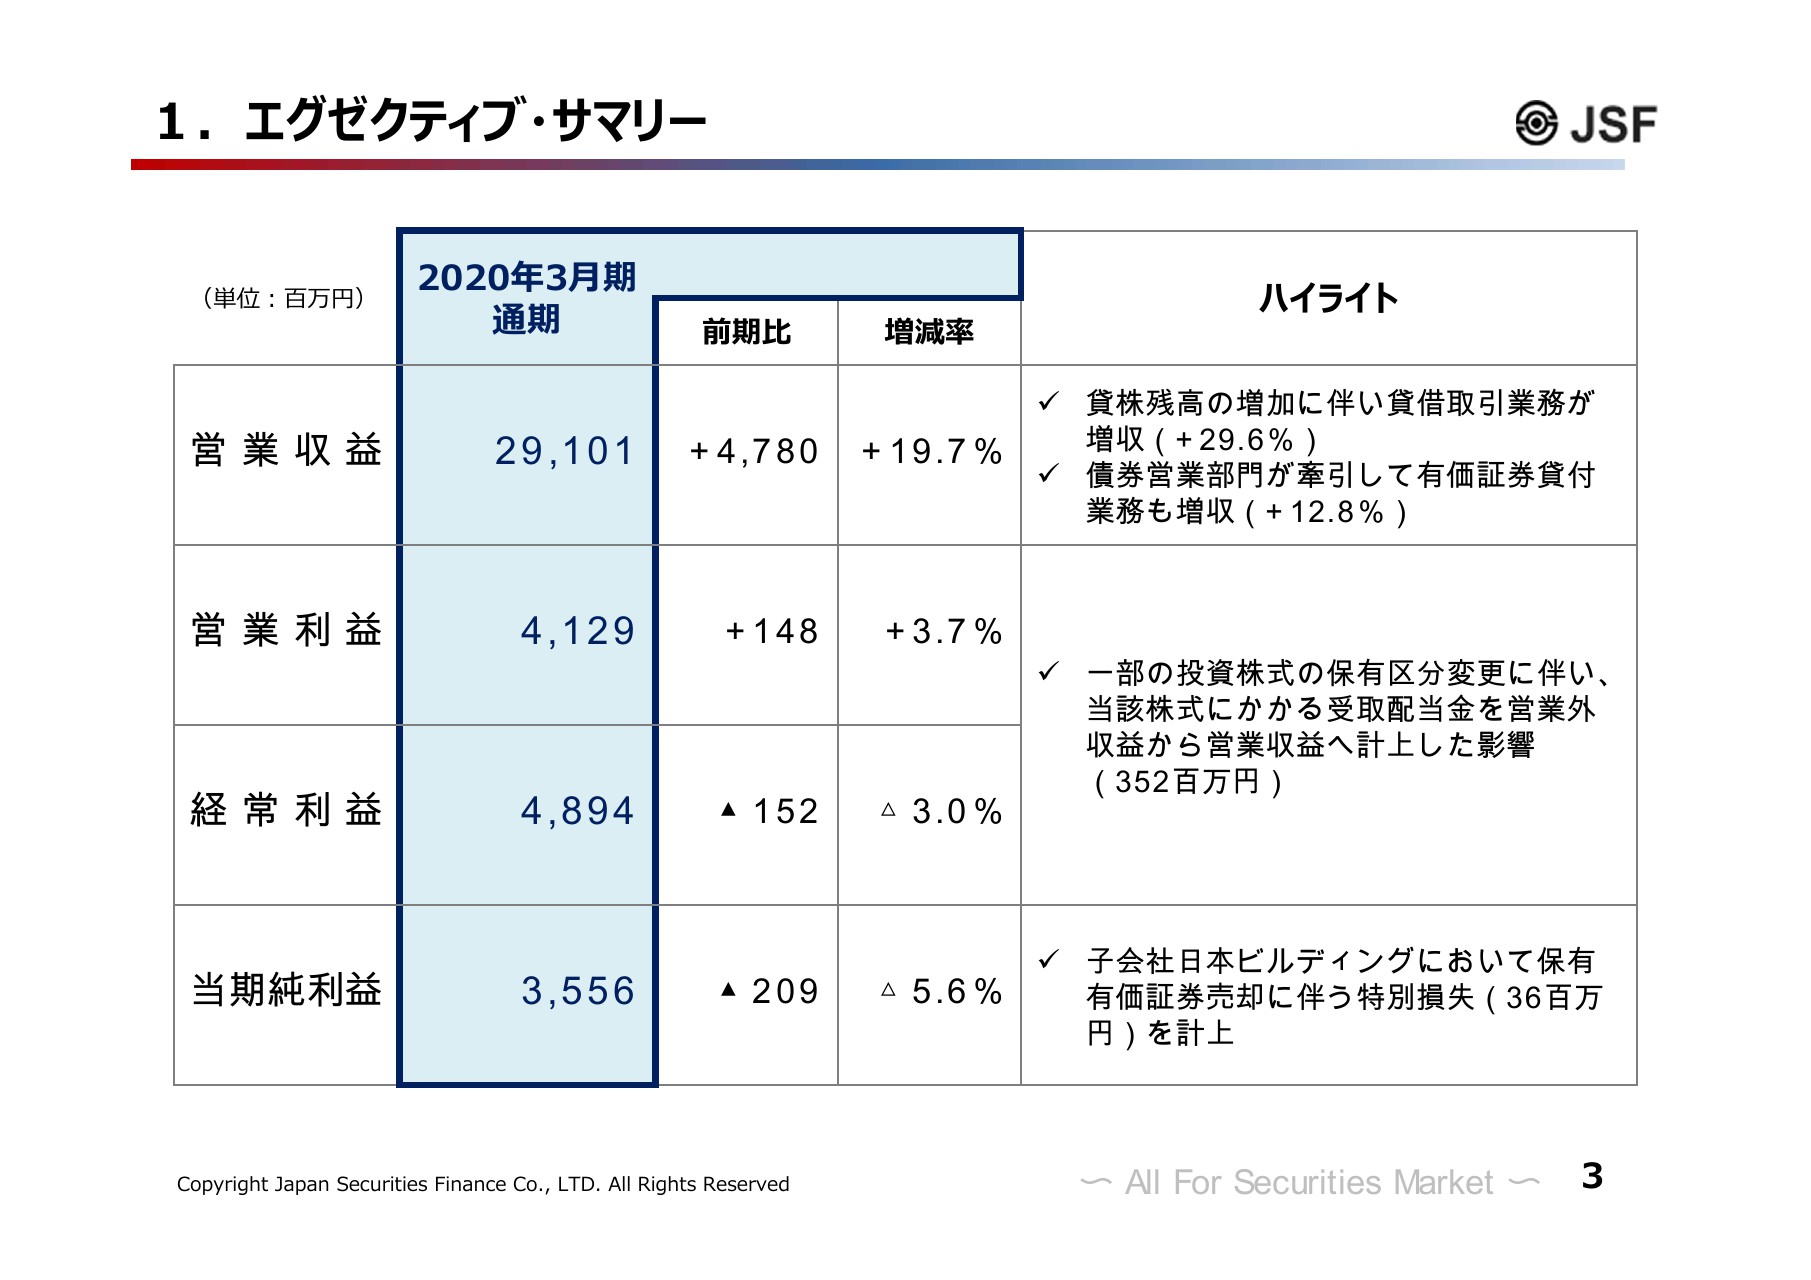 日本証券金融 通期は営業益増 貸株残高増加 ログミーファイナンス